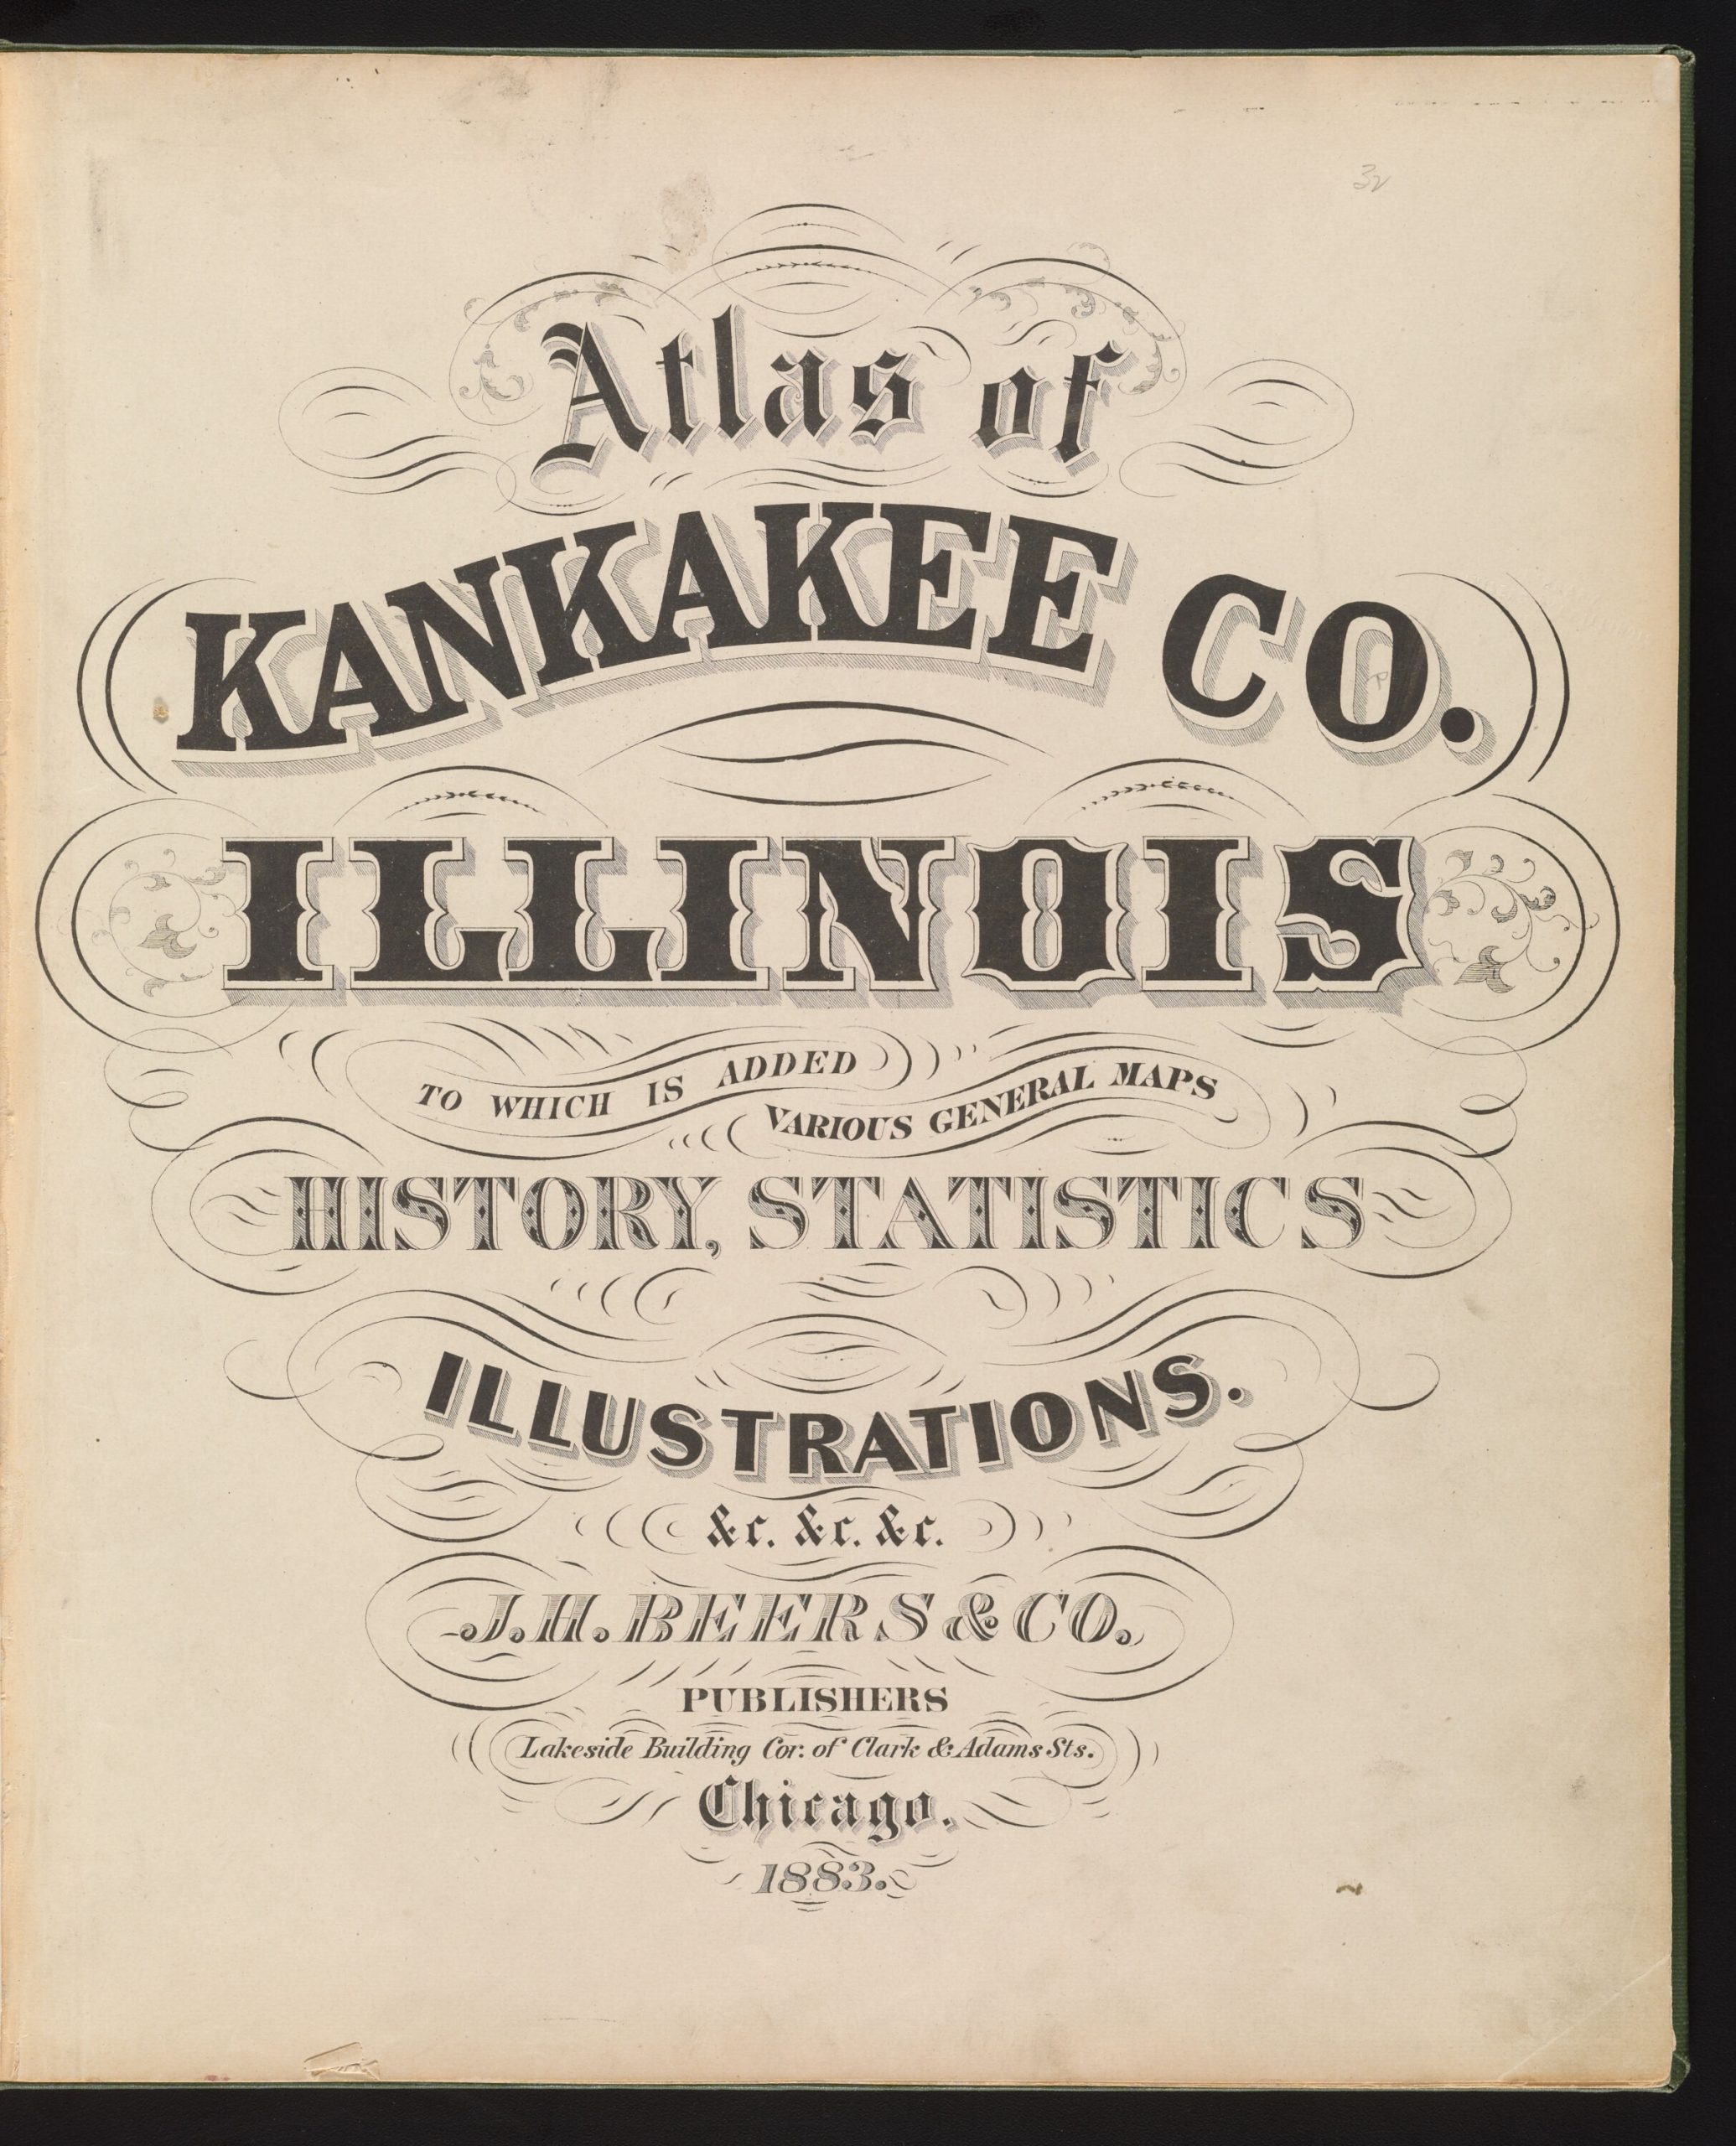 Kankakee 1883 Title page